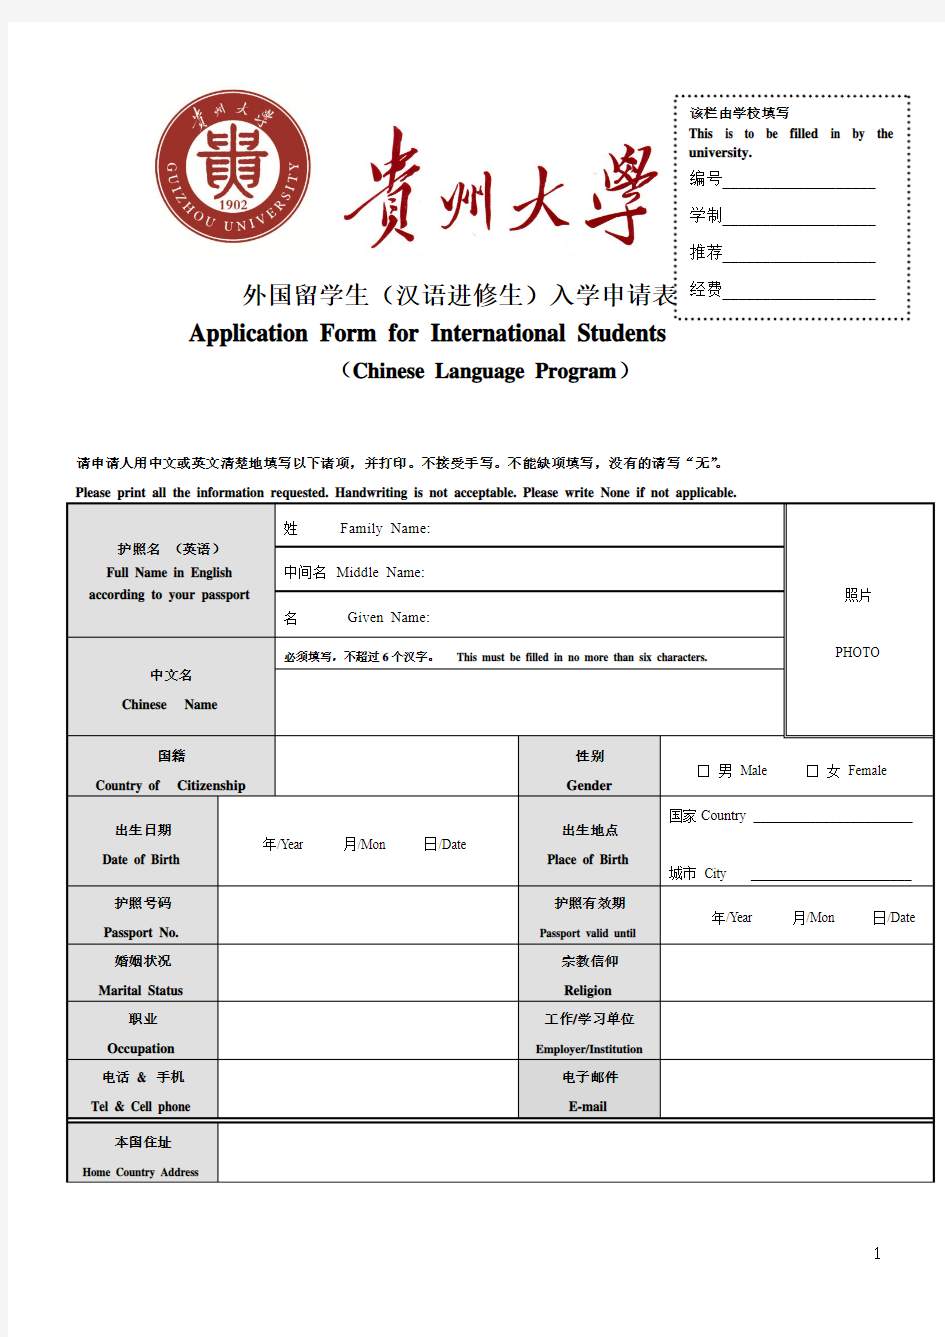 贵州大学外国留学生入学申请表